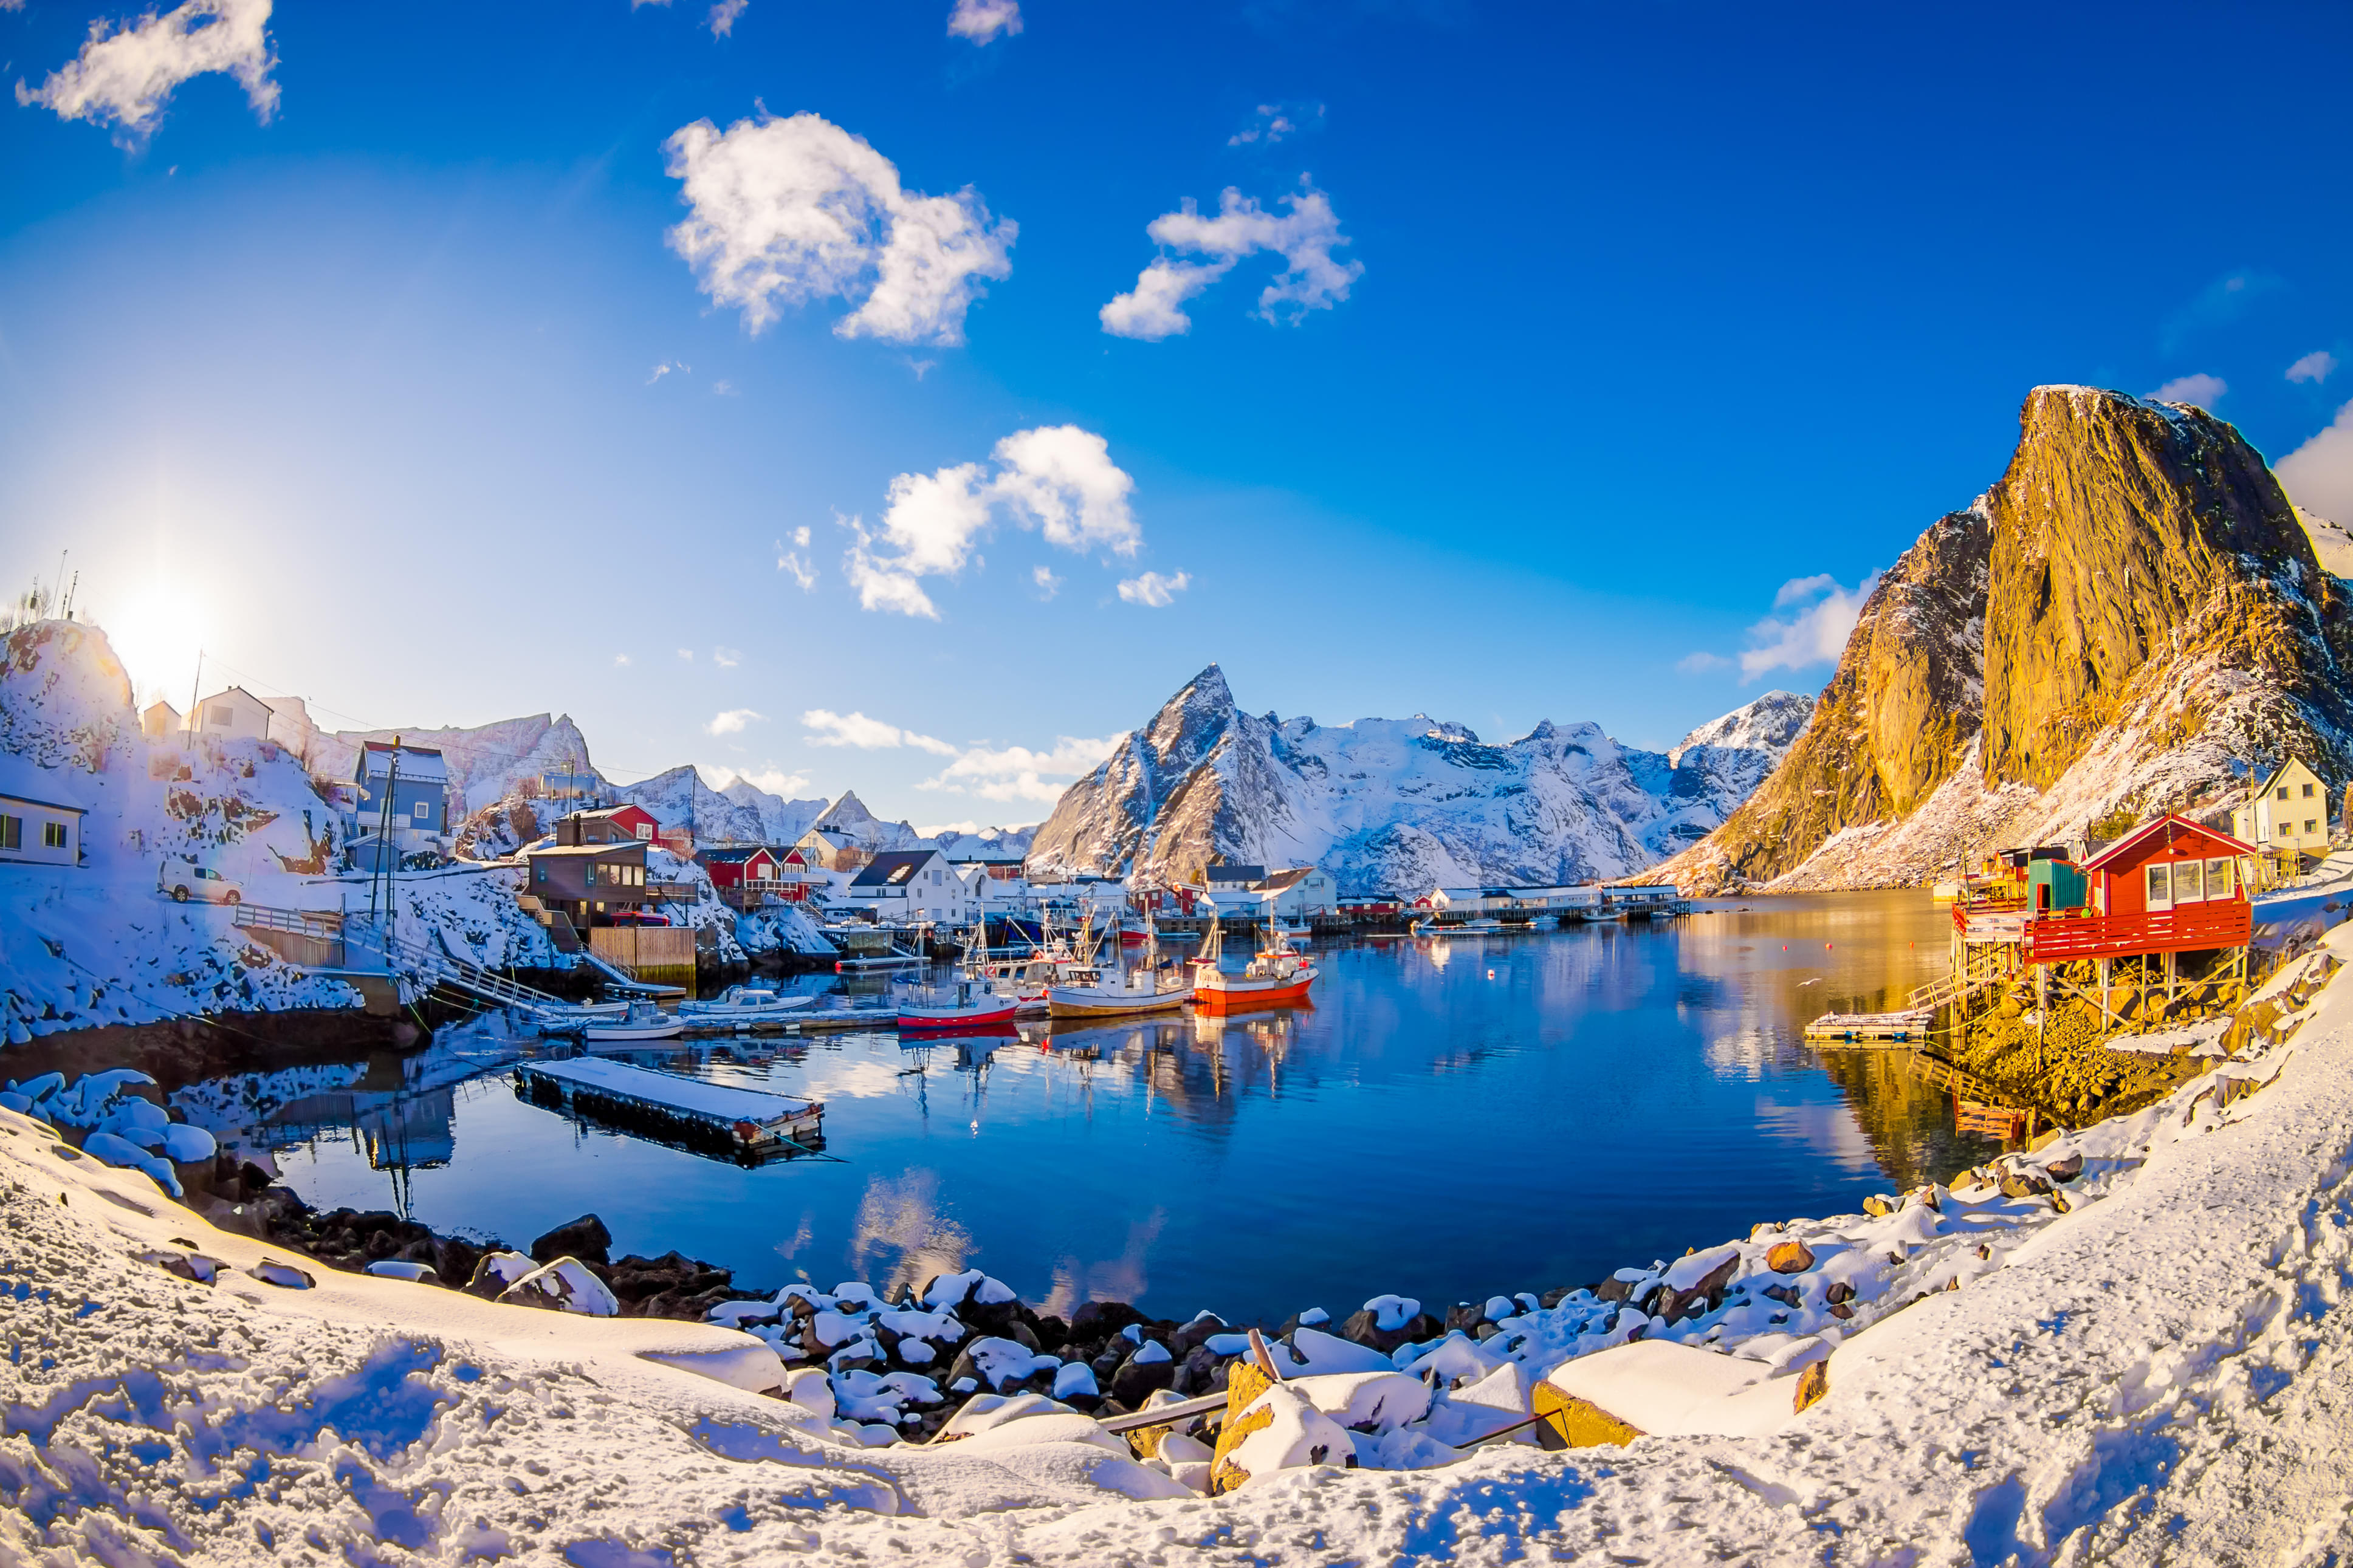 Best Rentals in Norway